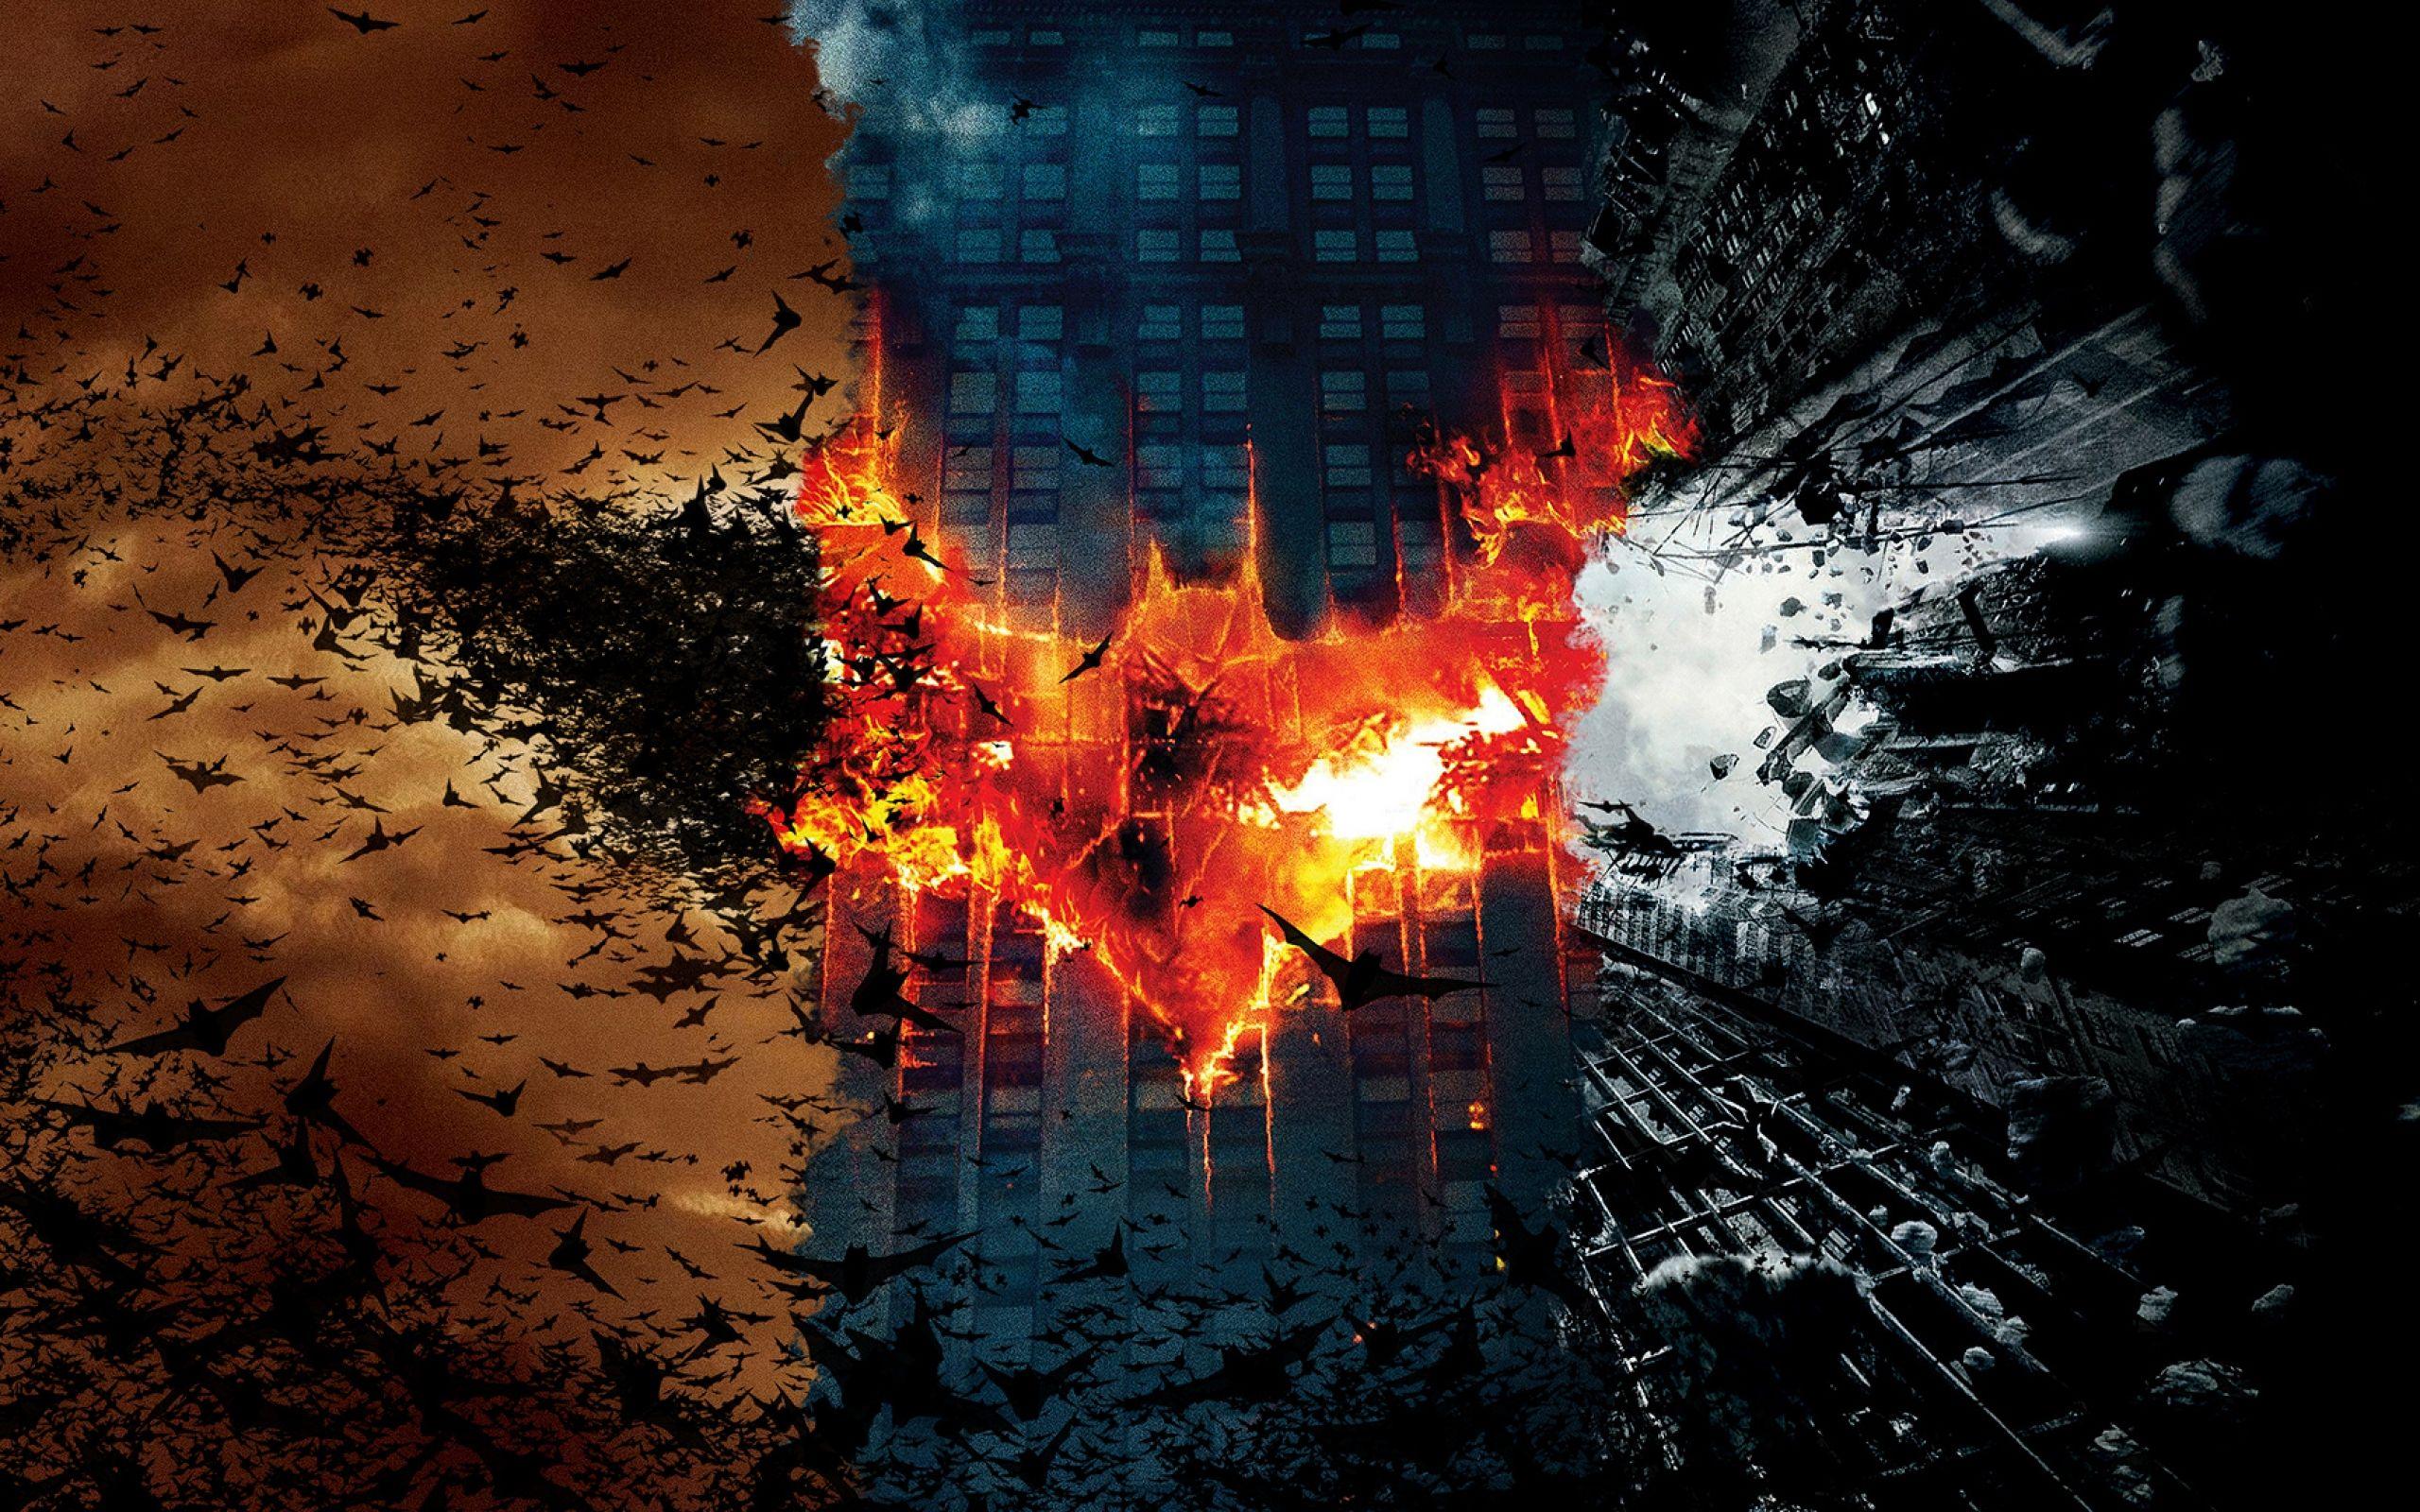 Download Batman The Dark Knight Rises HD Wallpapers 1920x1080.